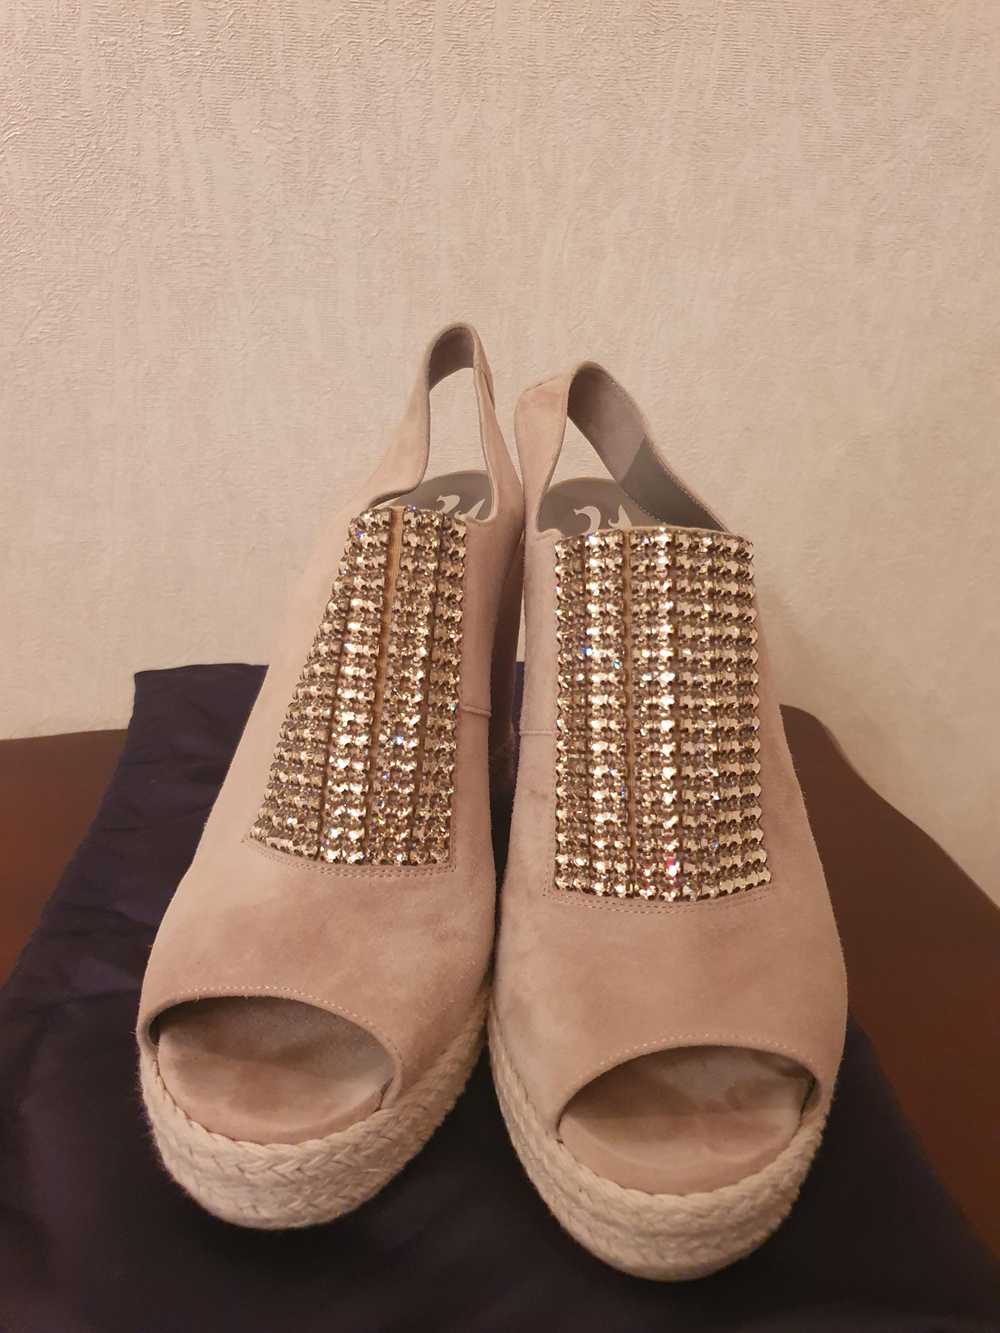 Gina Gina Suede Crystal Embellished Wedge Sandals - image 4